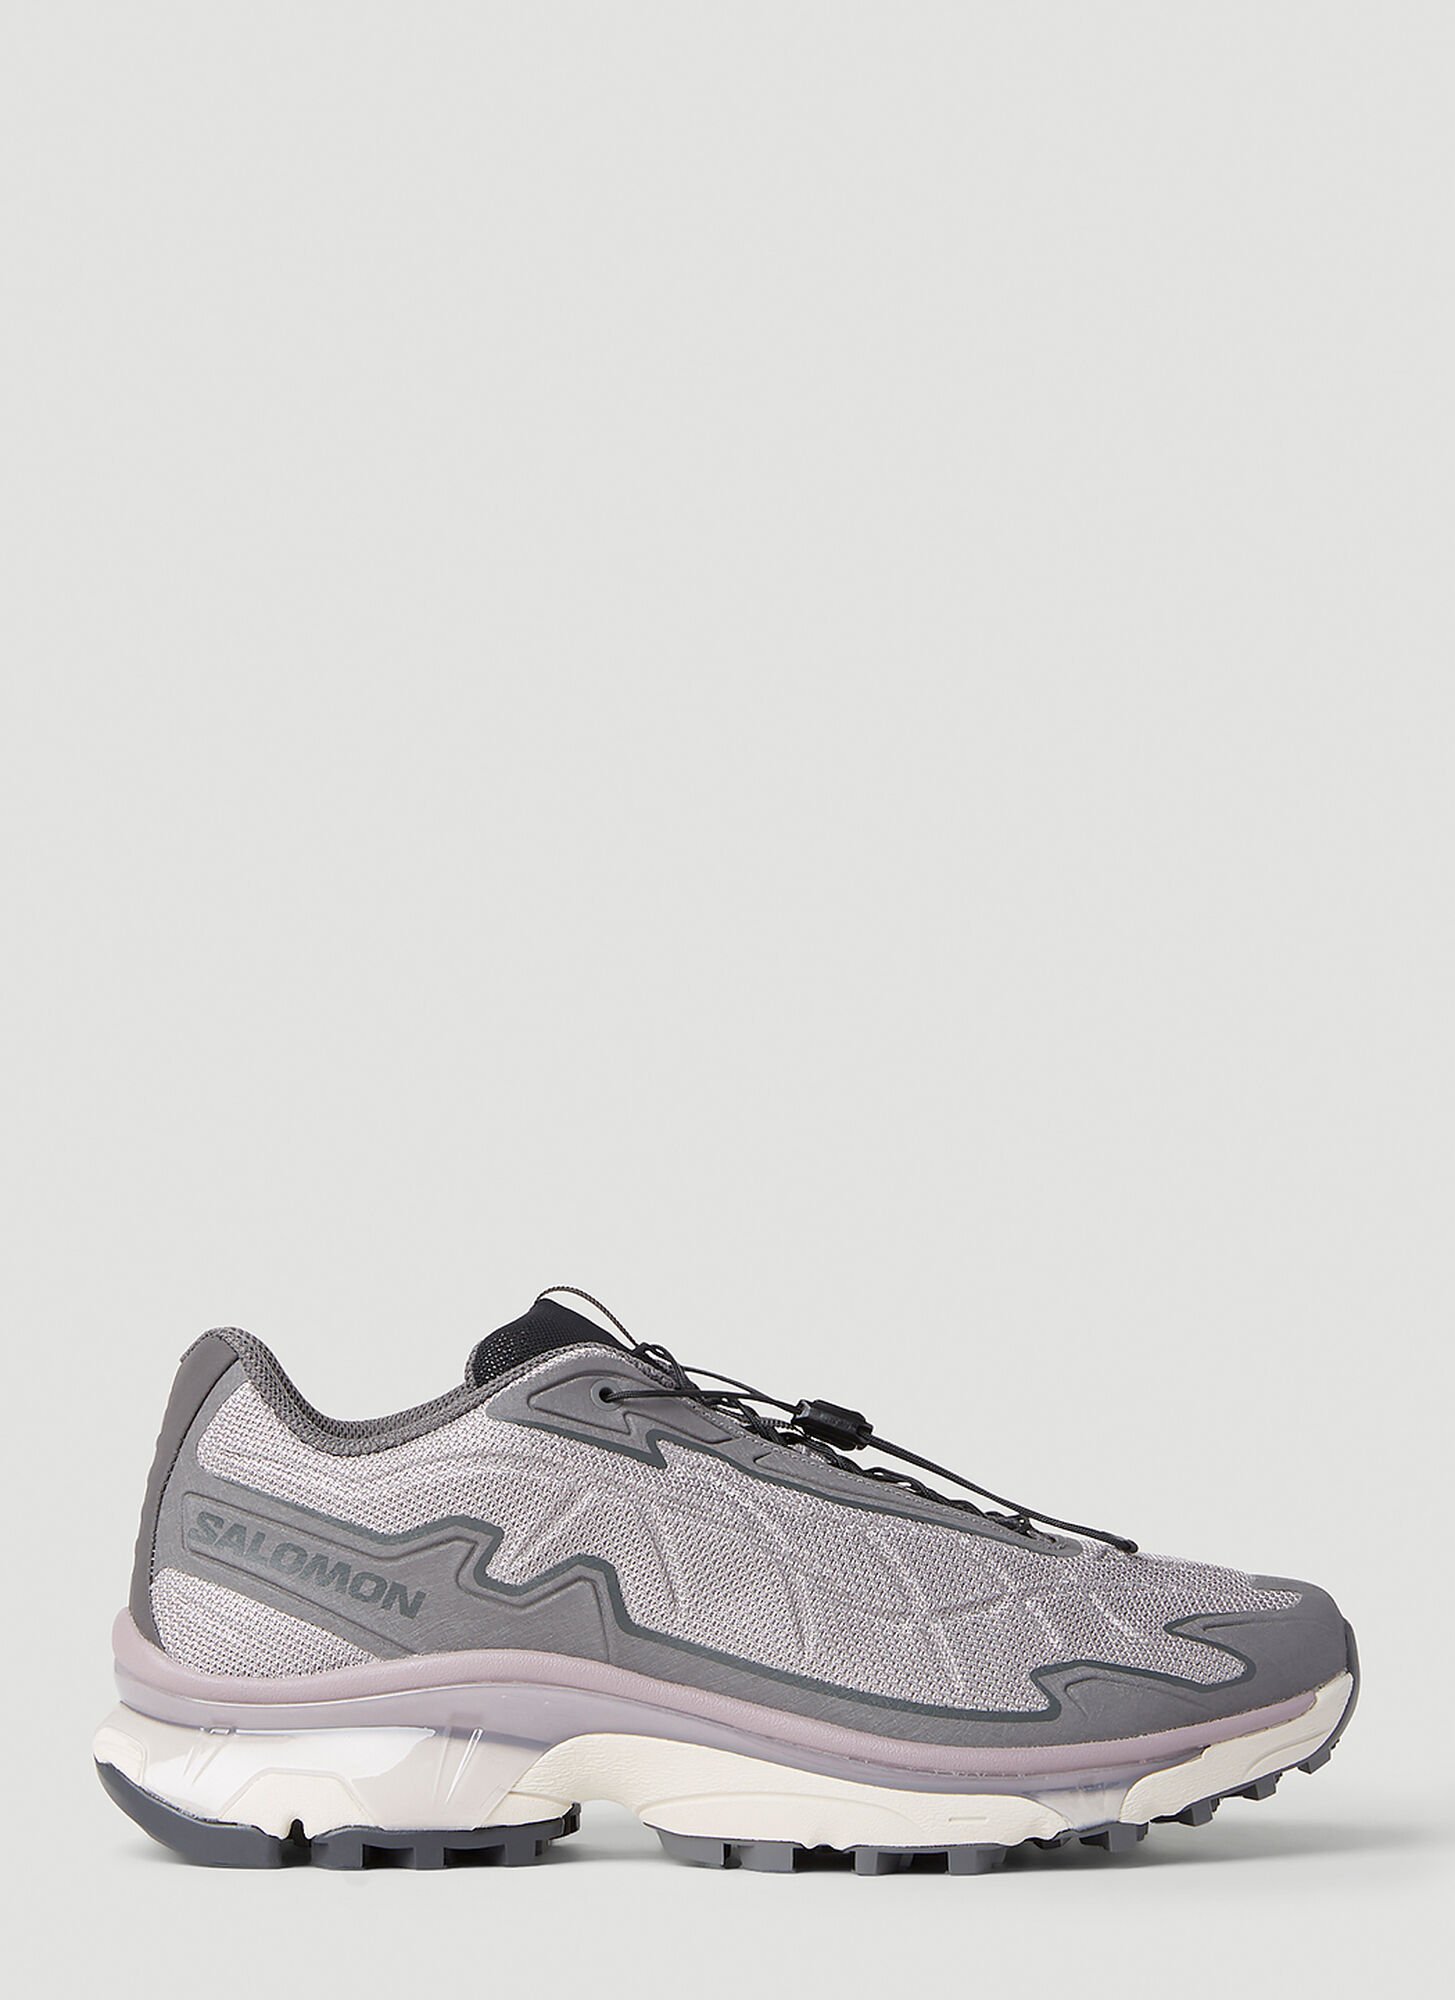 Salomon Xt-slate Advanced Sneakers Unisex Grey